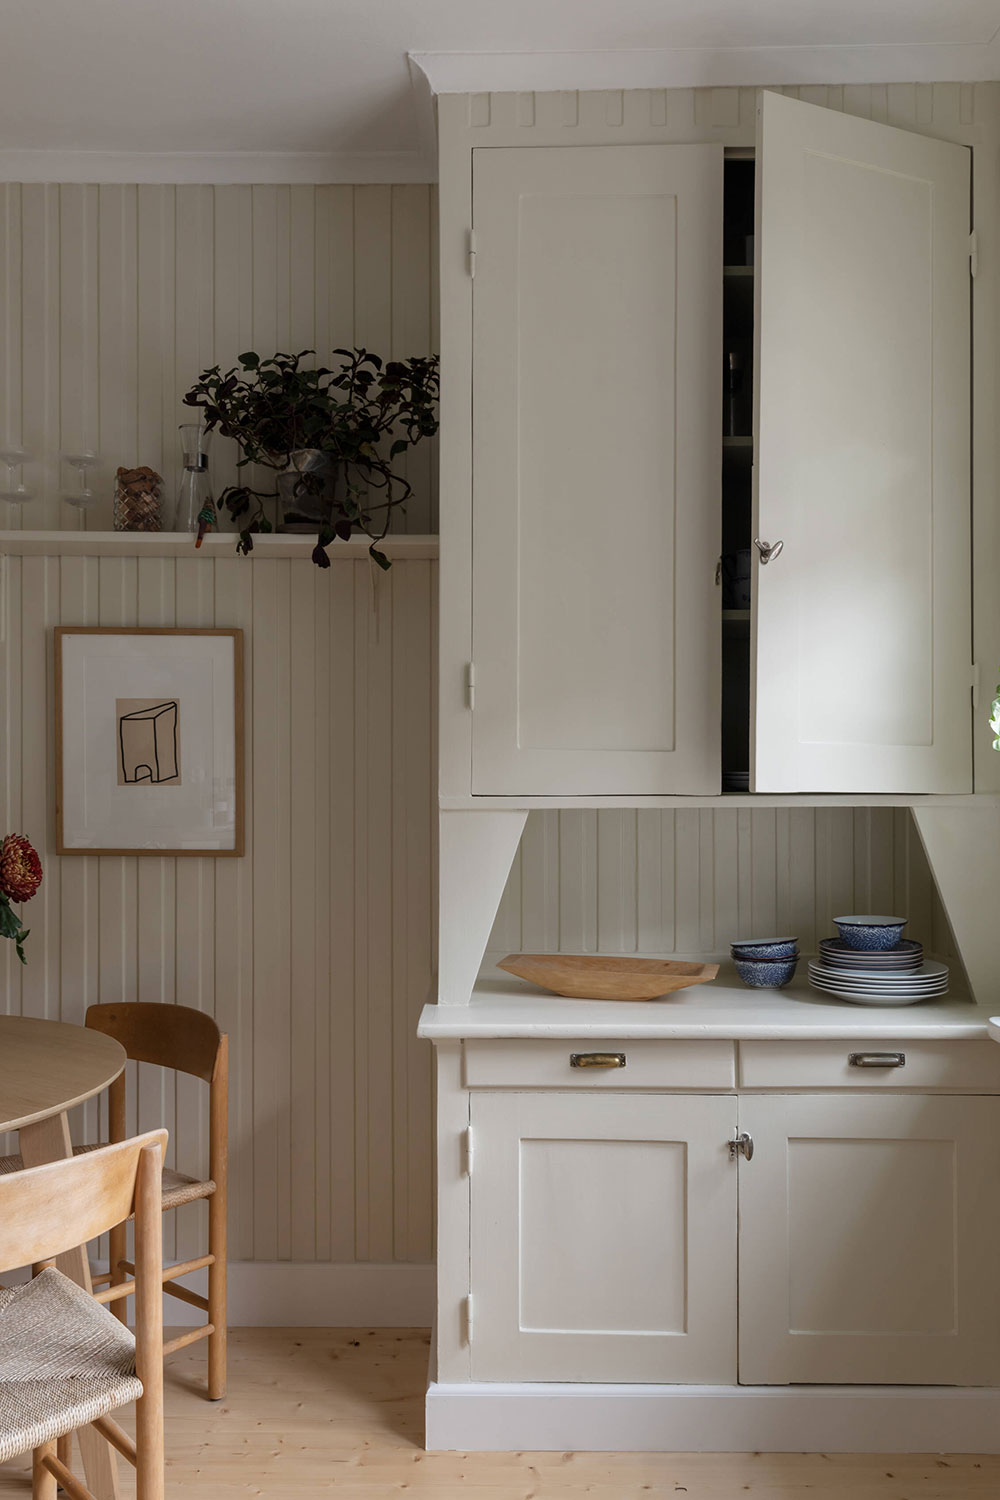 Цветочные обои в каждой комнате и вагонка на стенах: уютный кантри интерьер шведской квартиры